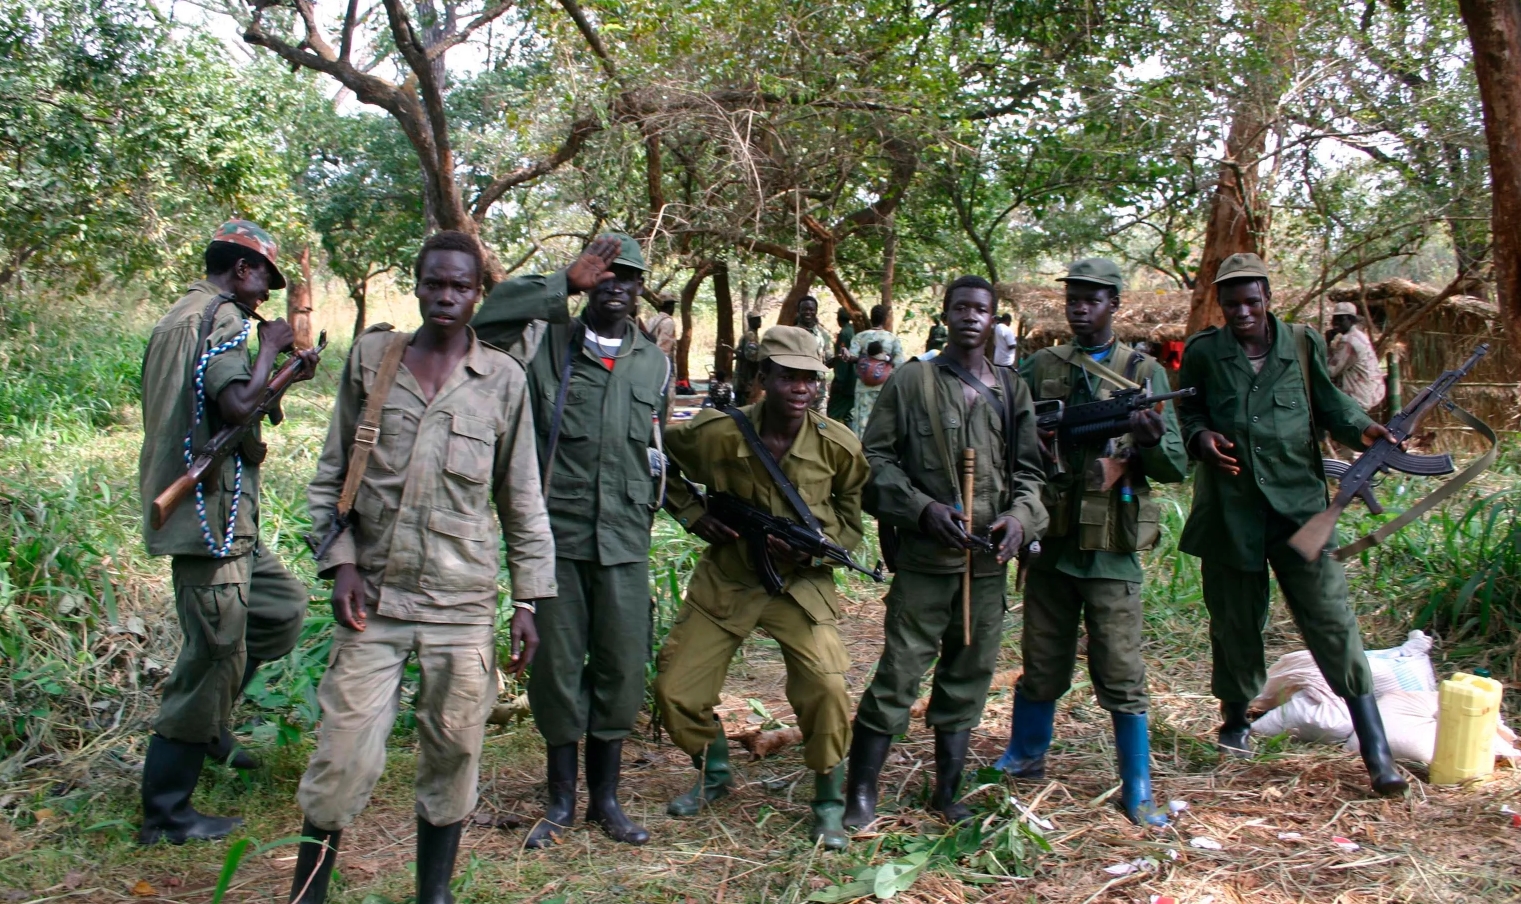 Бійці угруповання «Господня армія опору» (LRA, Lord’s Resistance Army). Фото: AFP